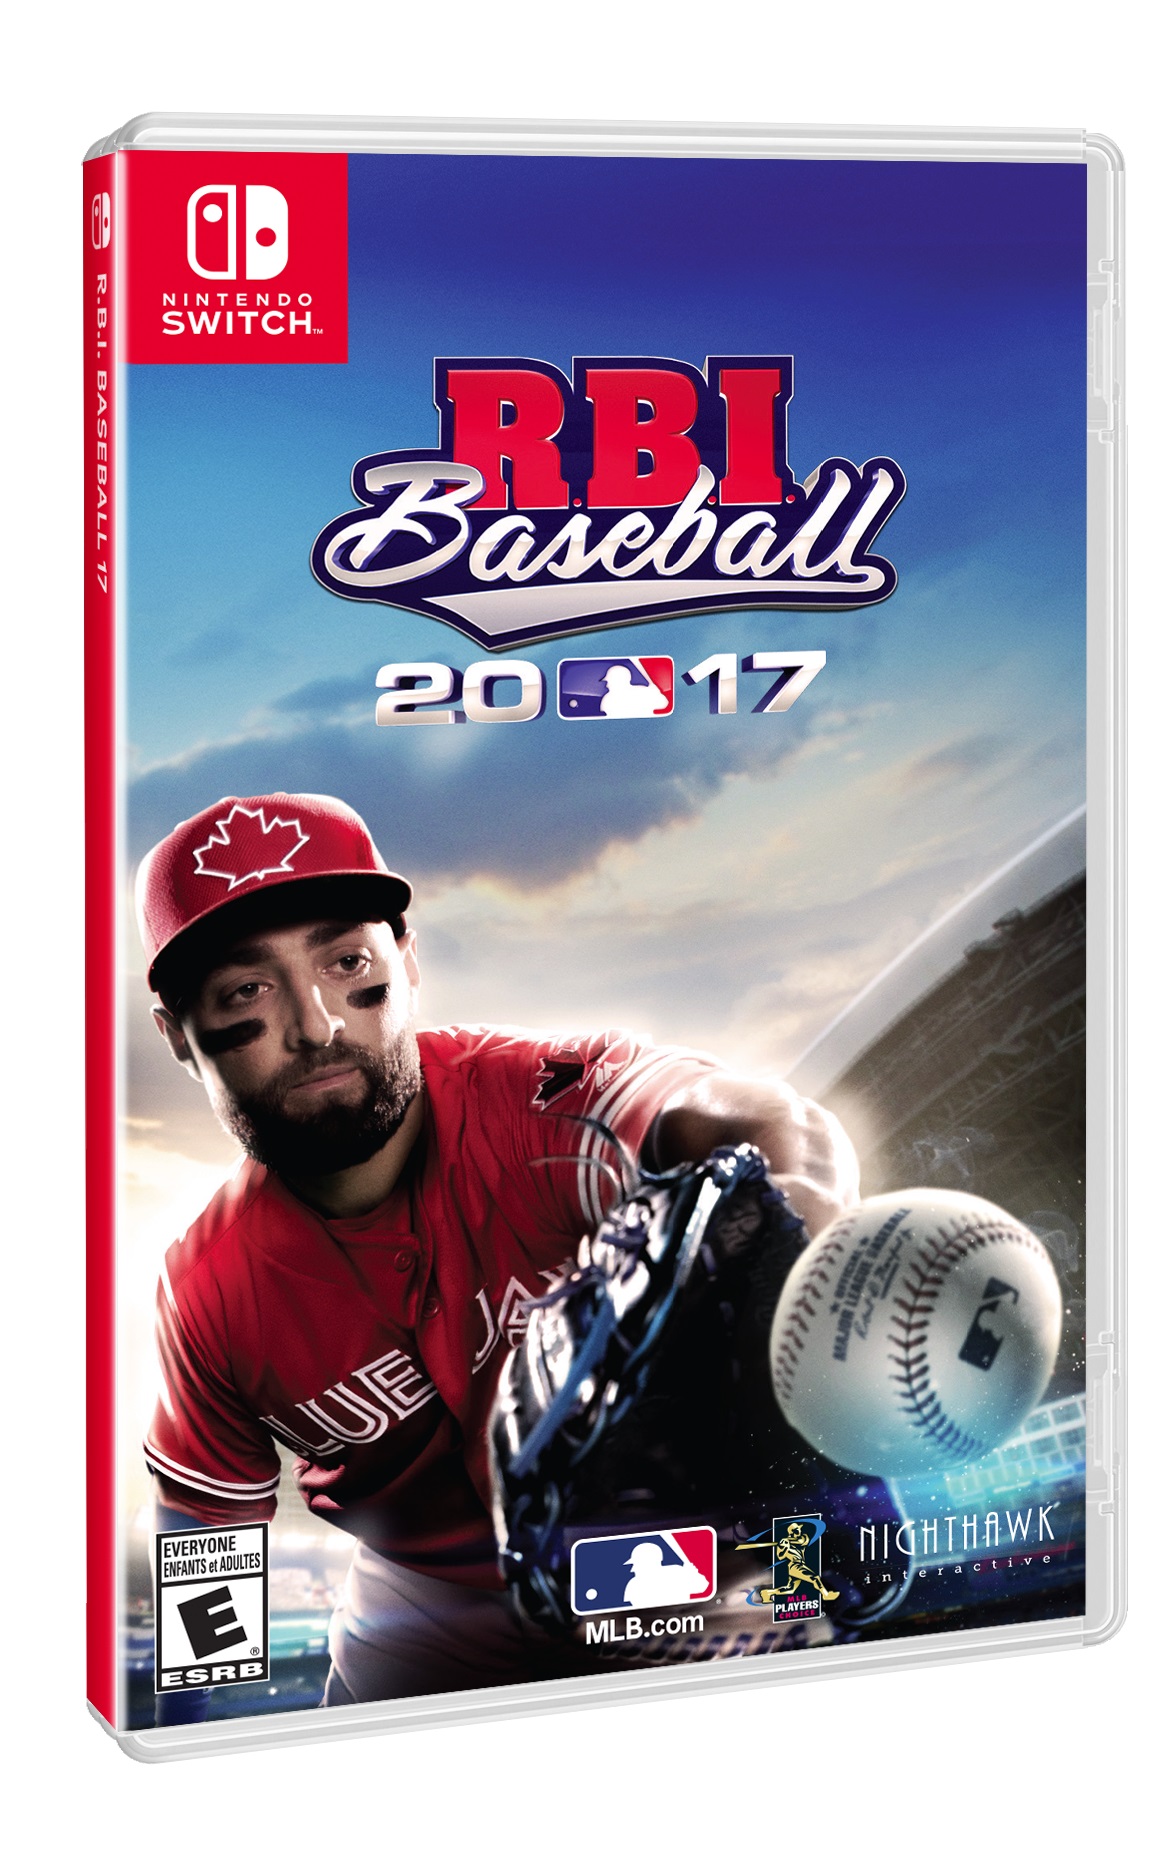 R.B.I. Baseball heading to Switch in September